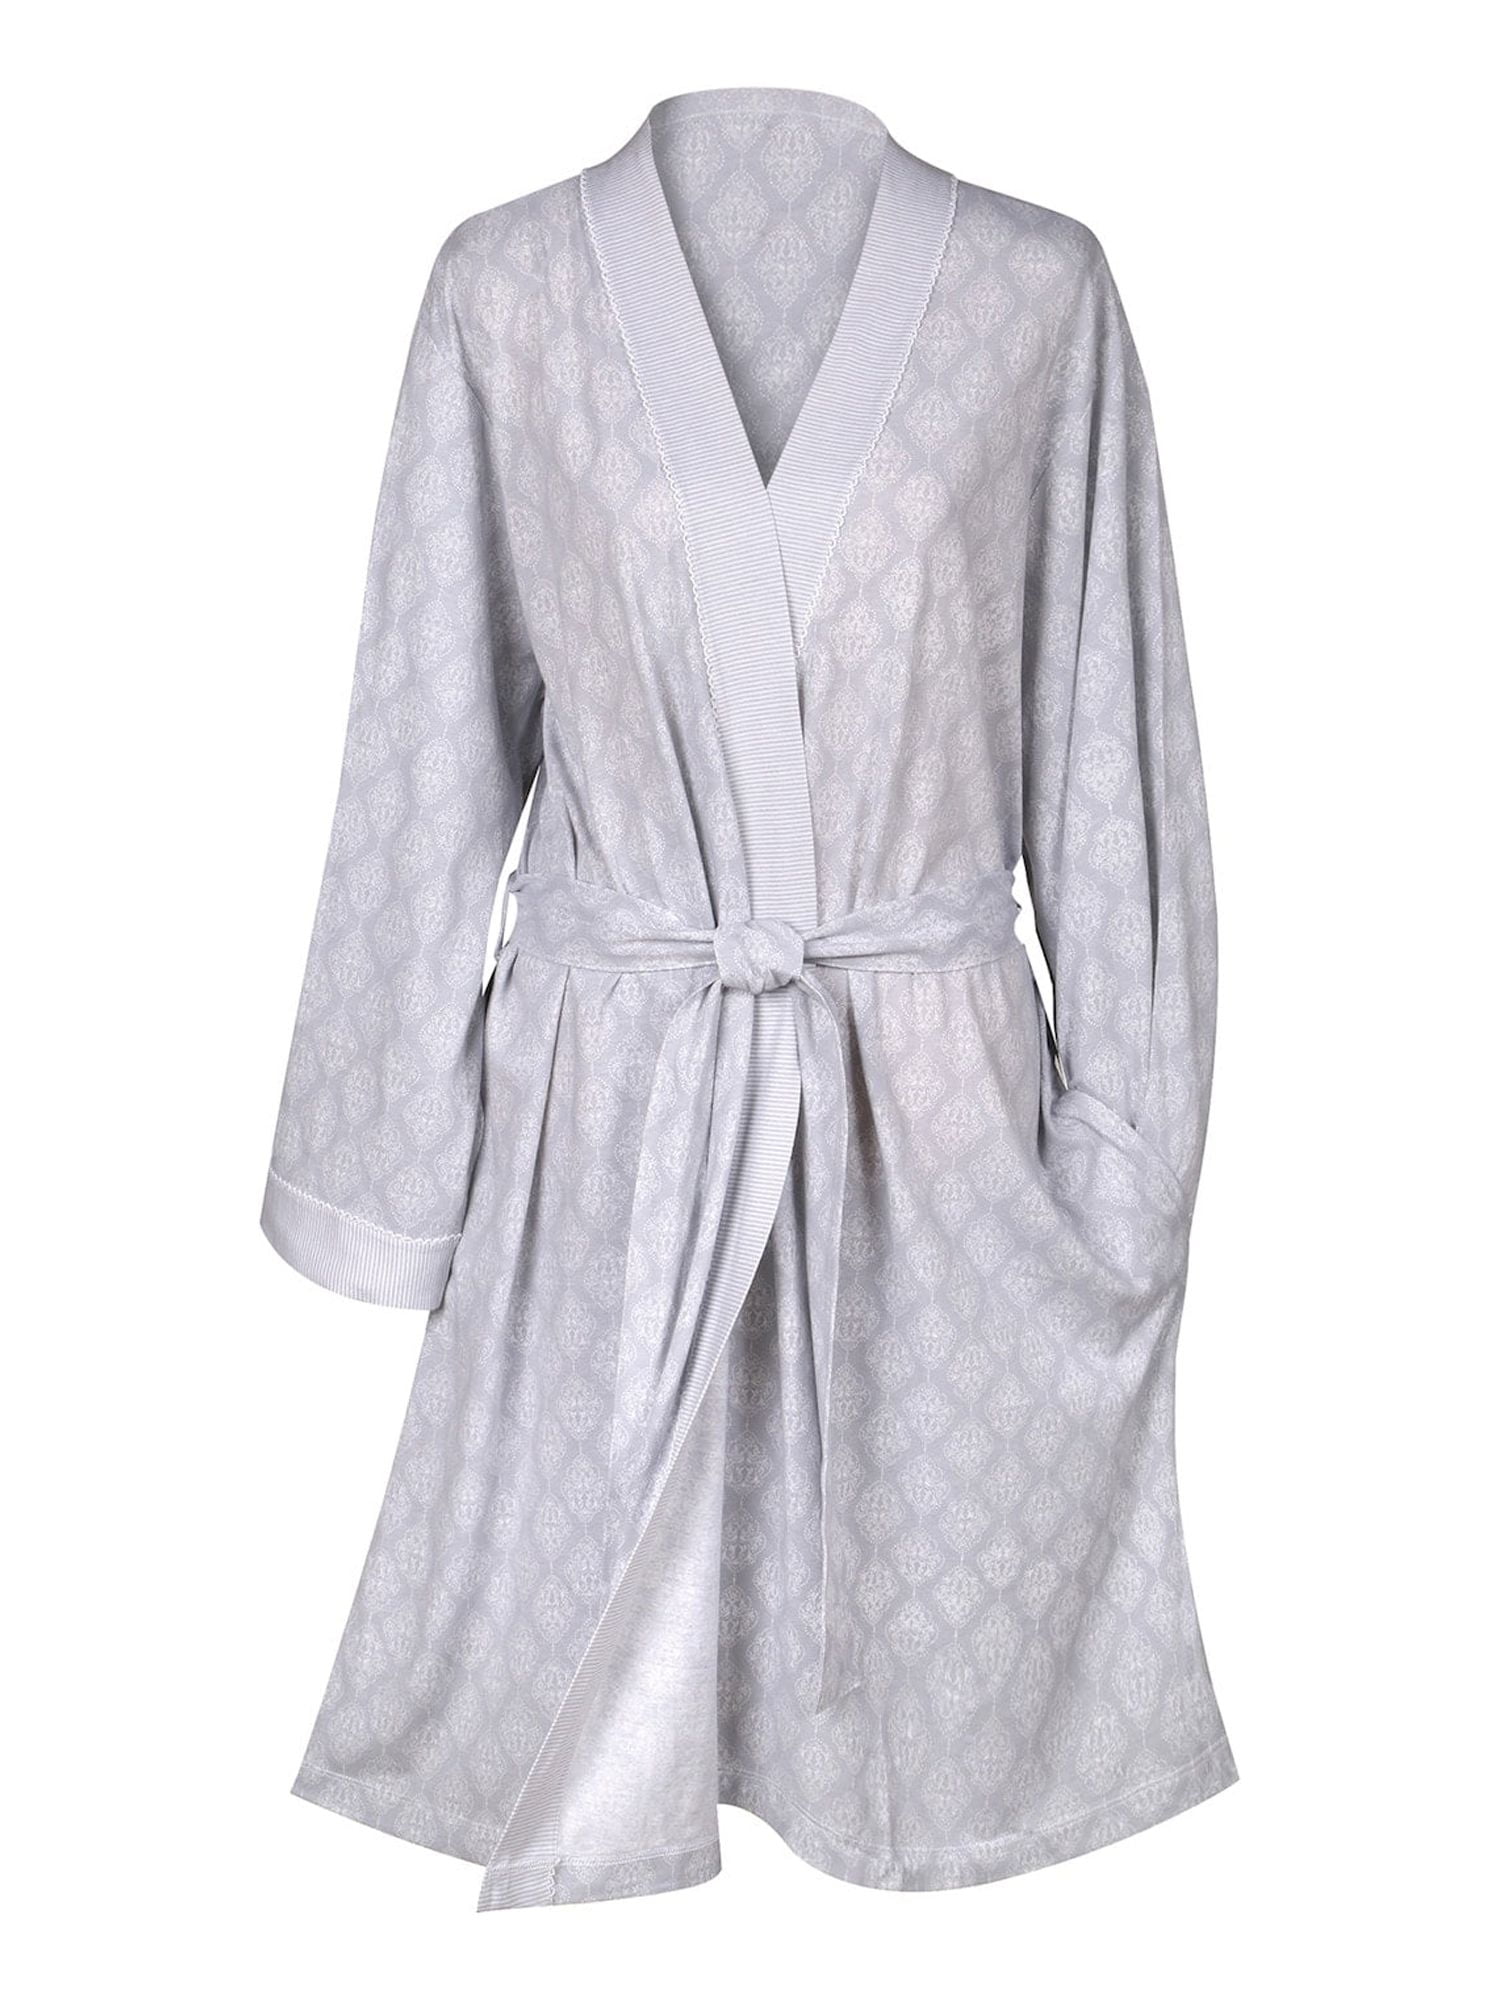 JOOP! Women's bathrobe in gray